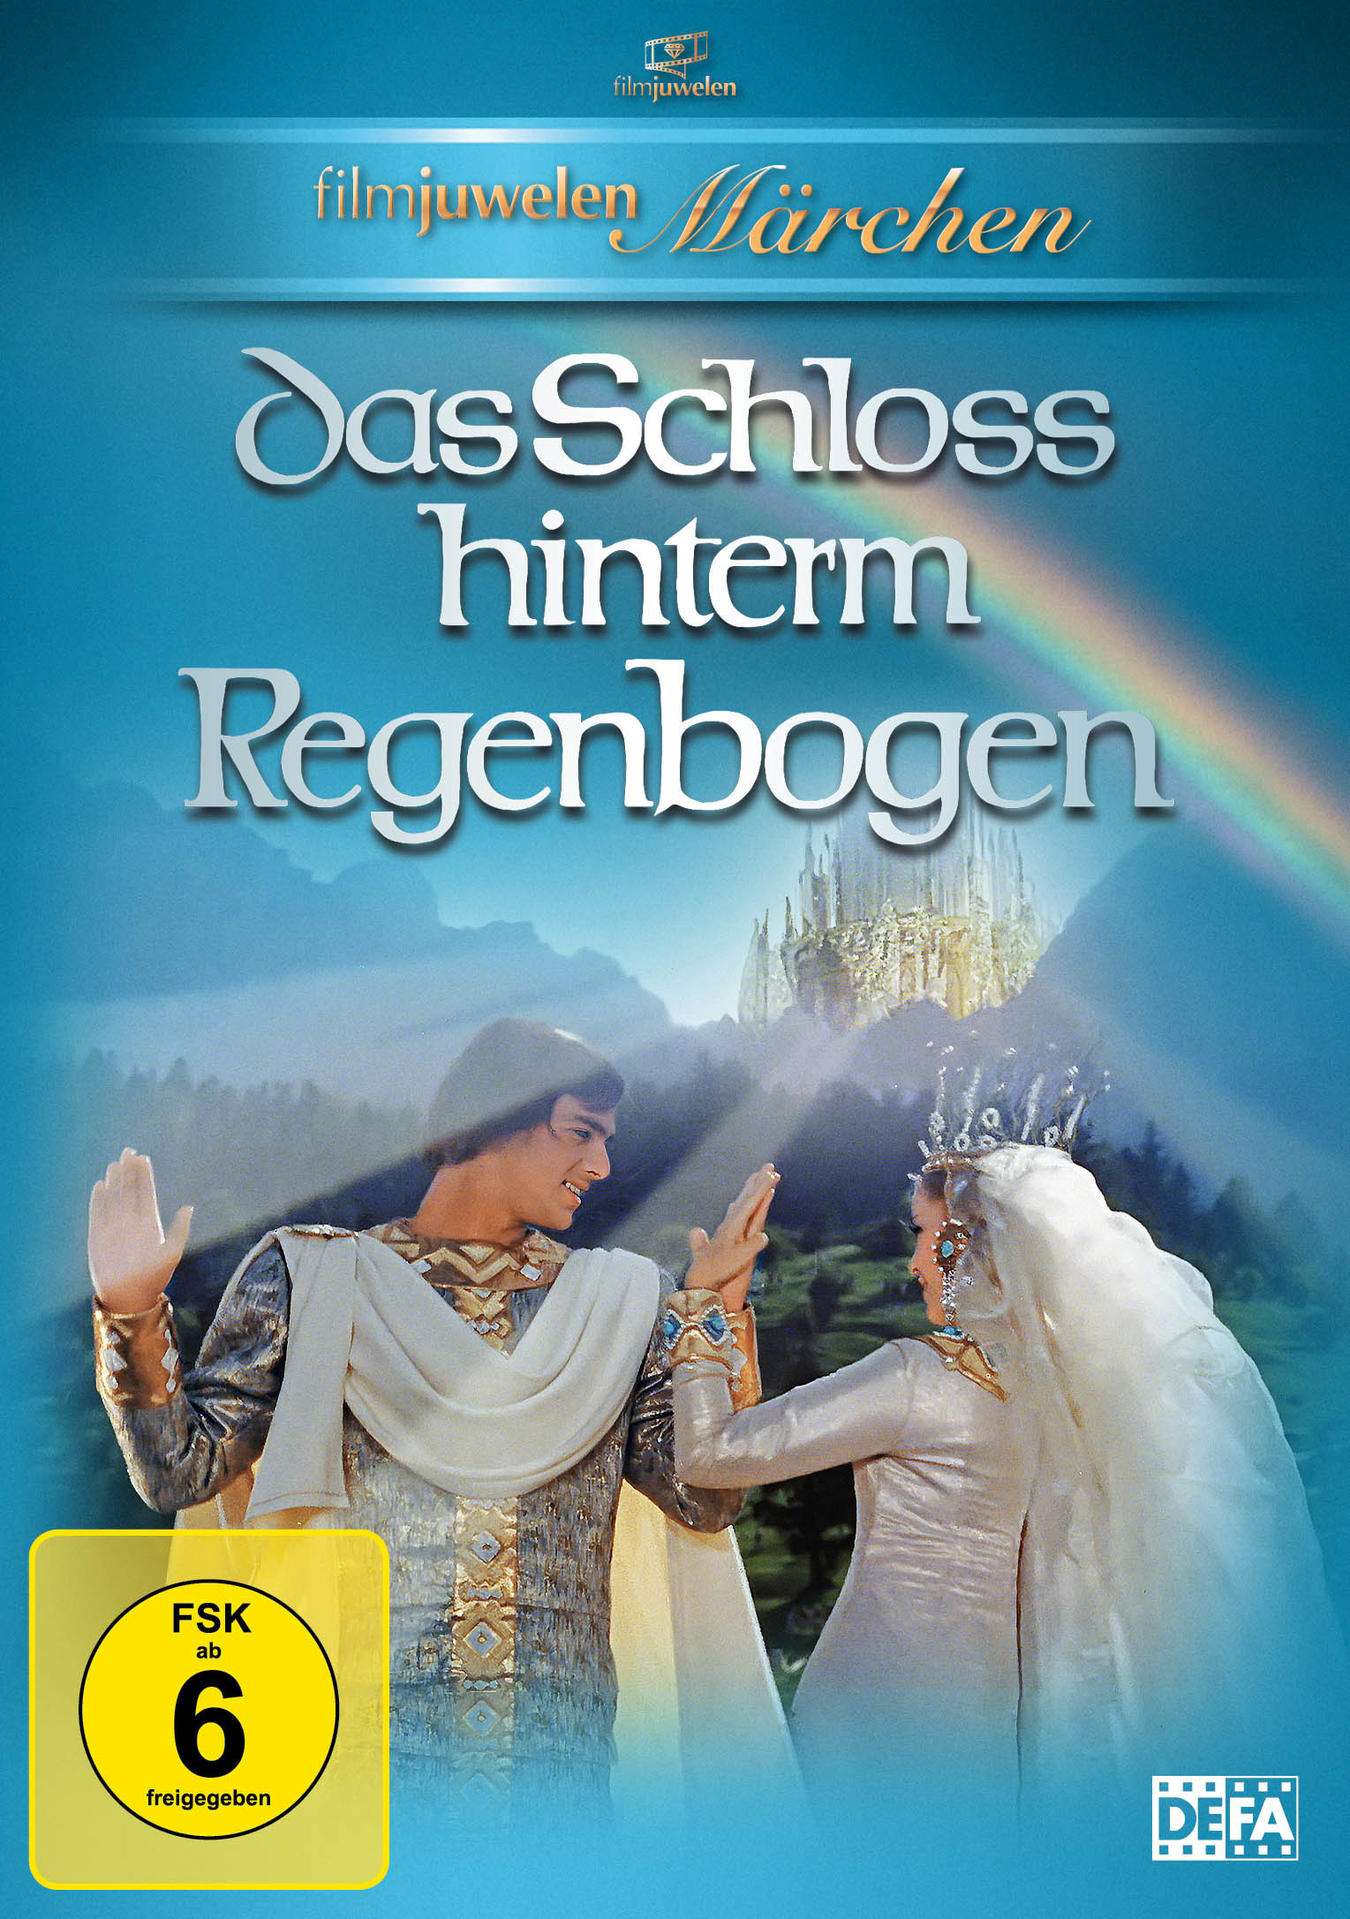 Das DVD hinter dem Schloss Regenbogen